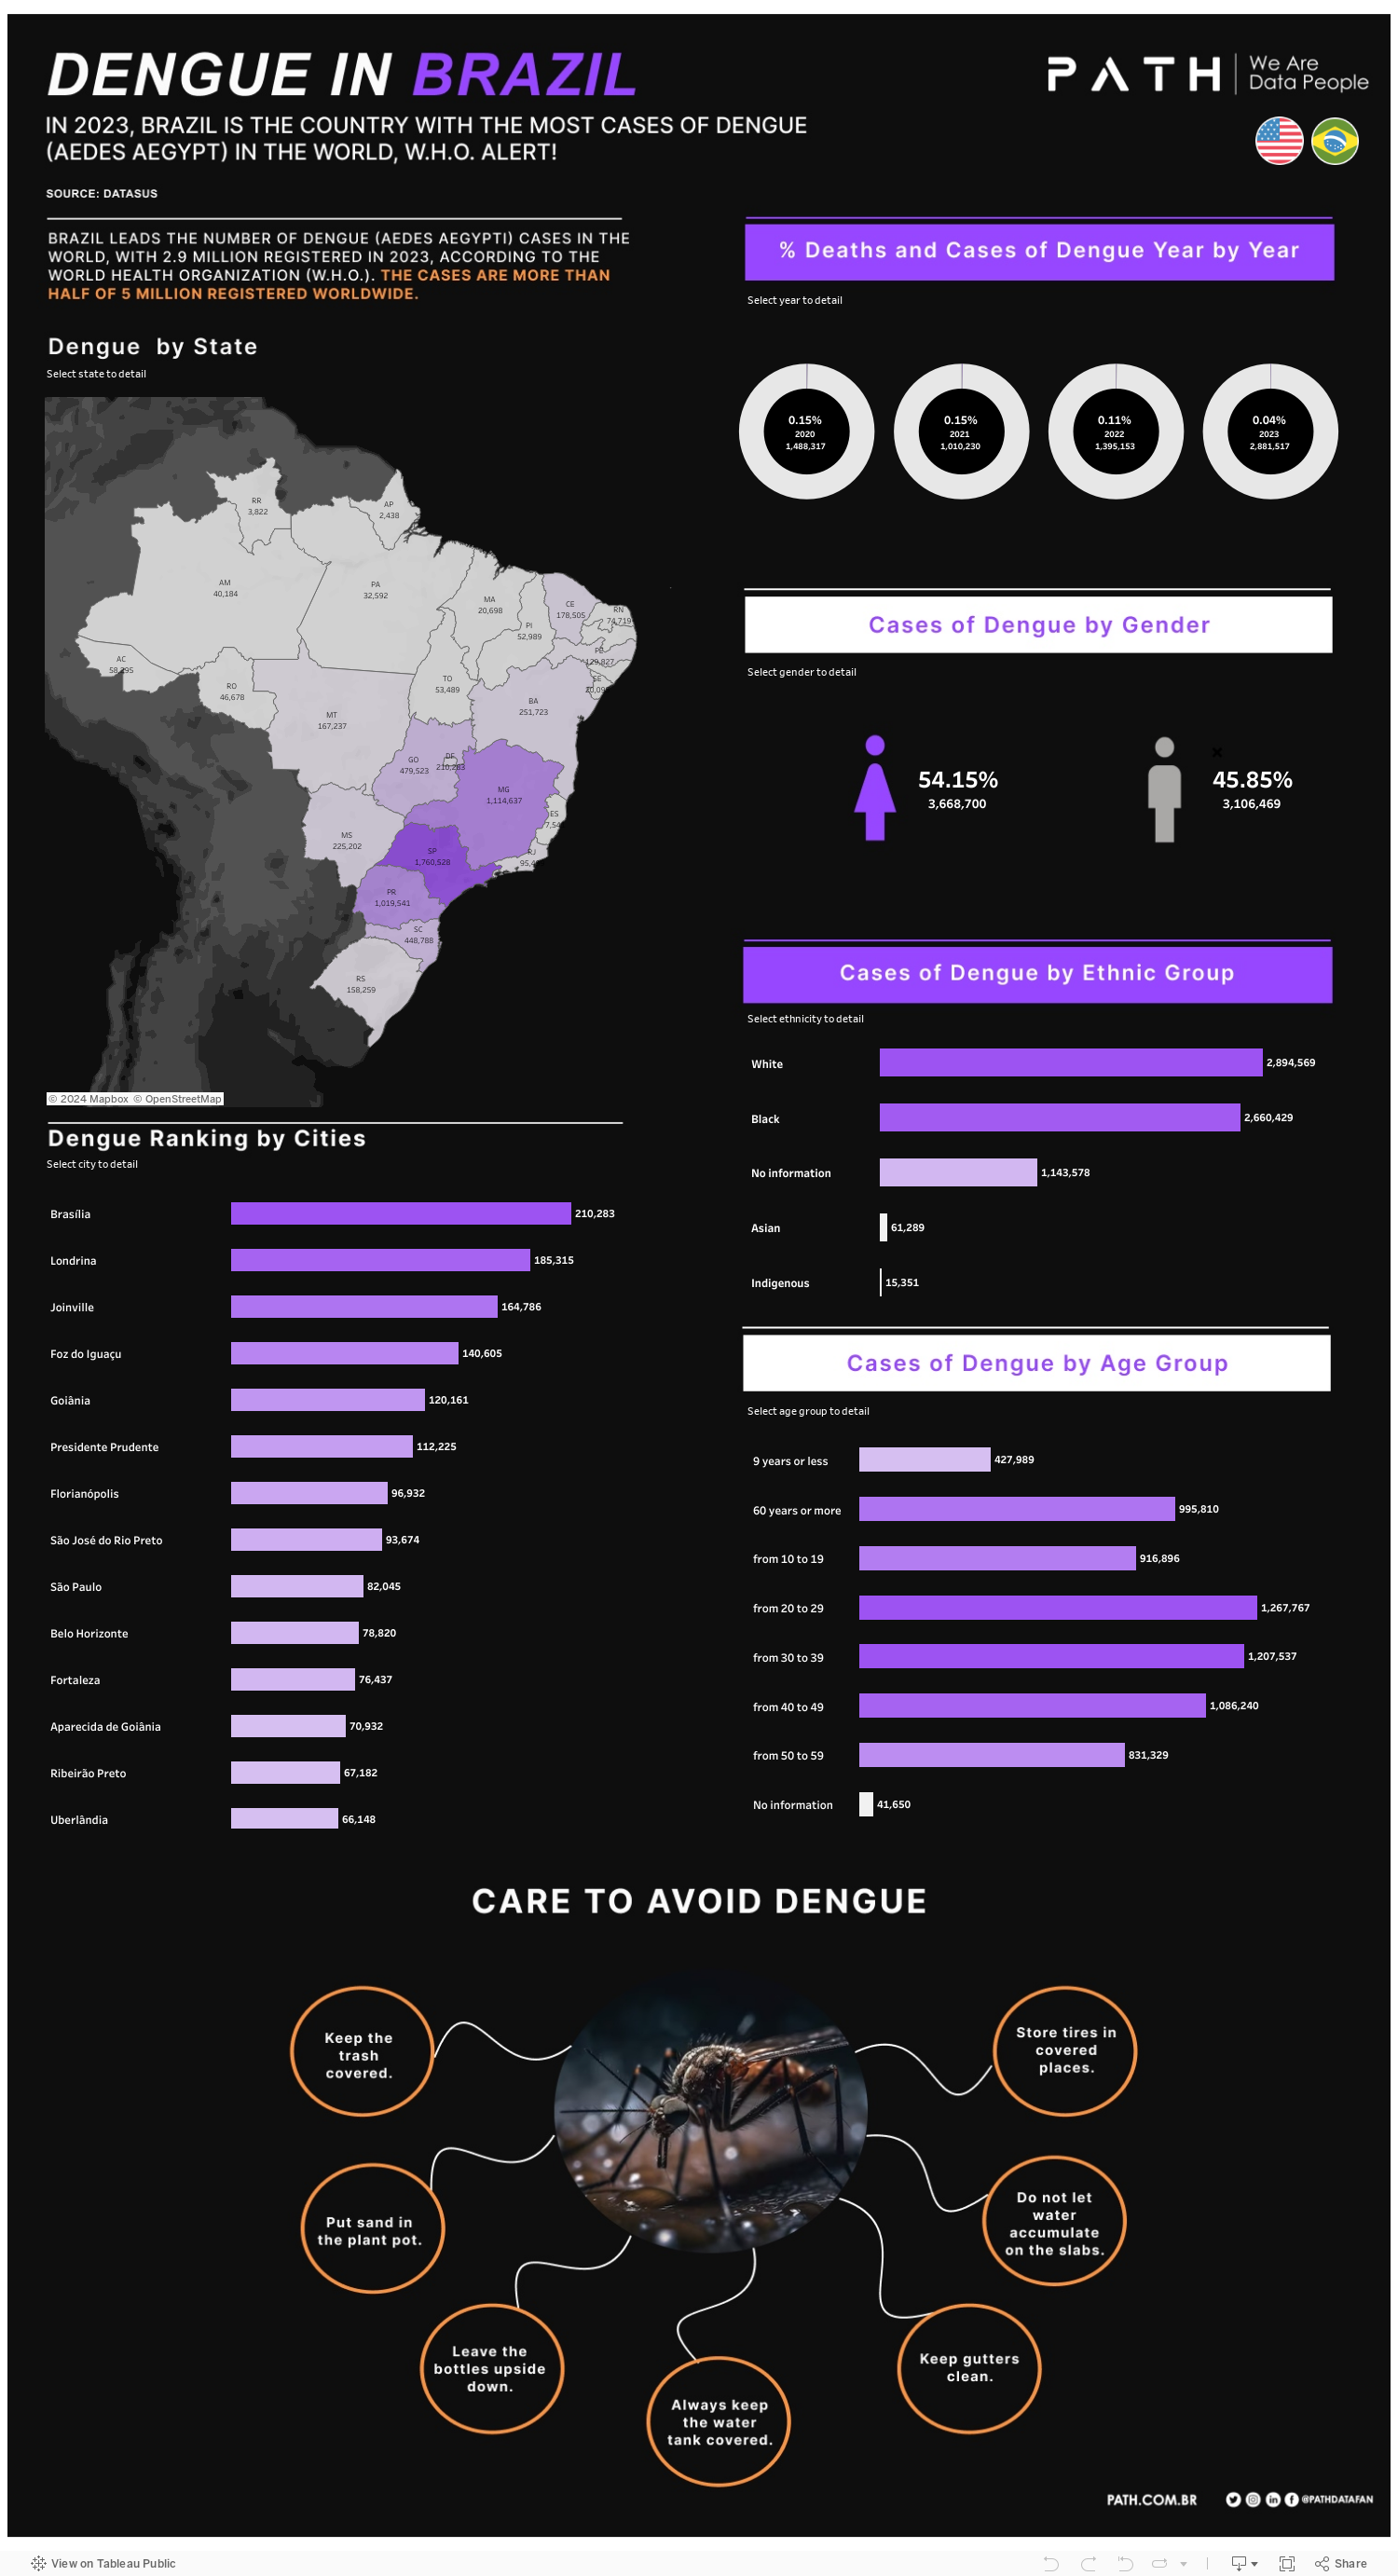 Dengue in Brazil 